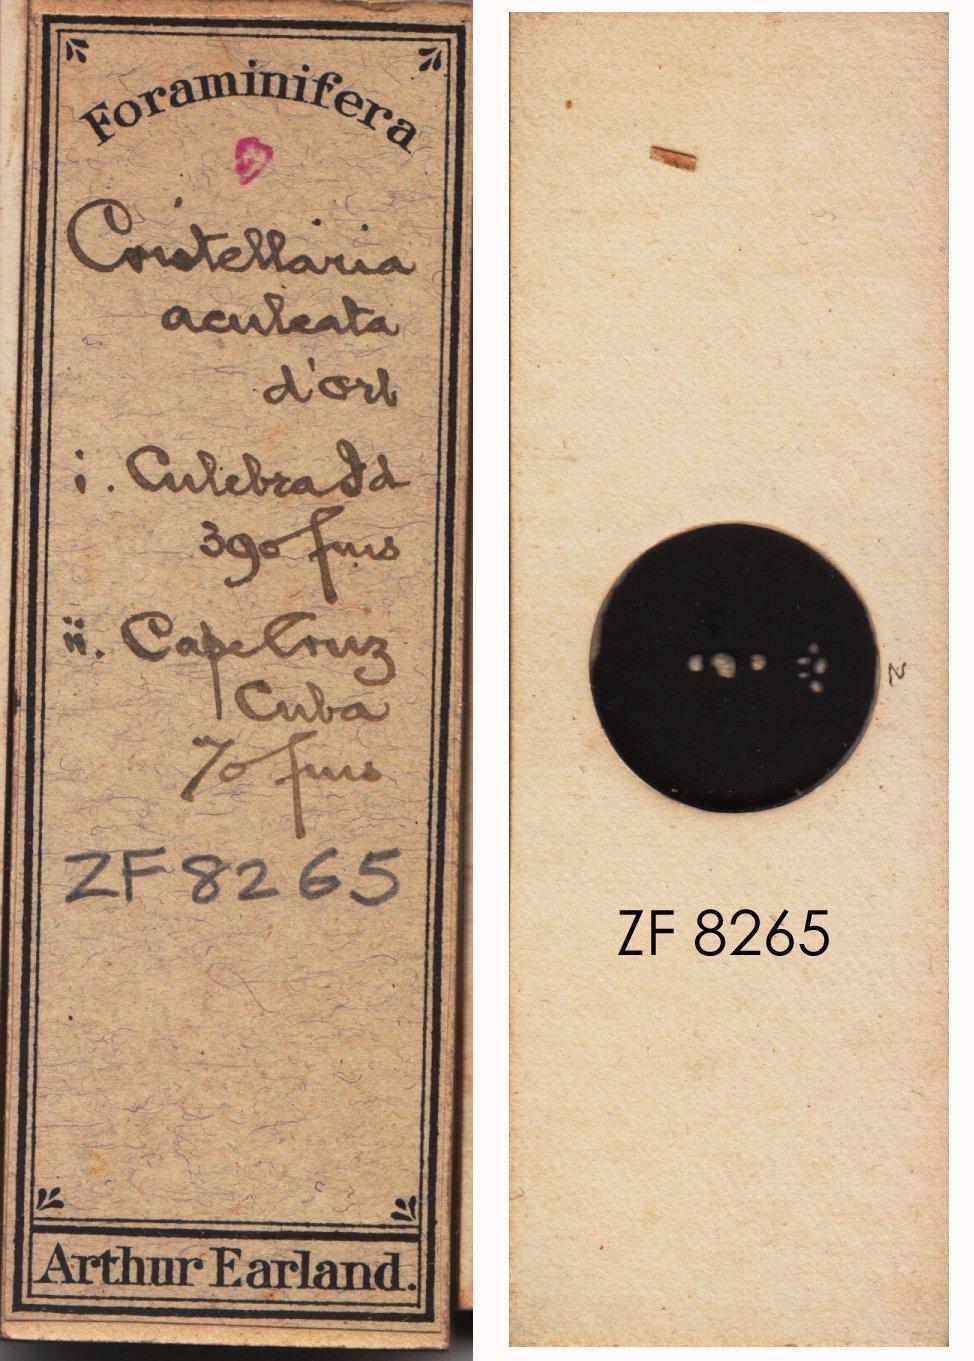 To NHMUK collection (Cristellaria aculeata Orbigny, 1826; NHMUK:ecatalogue:9143453)